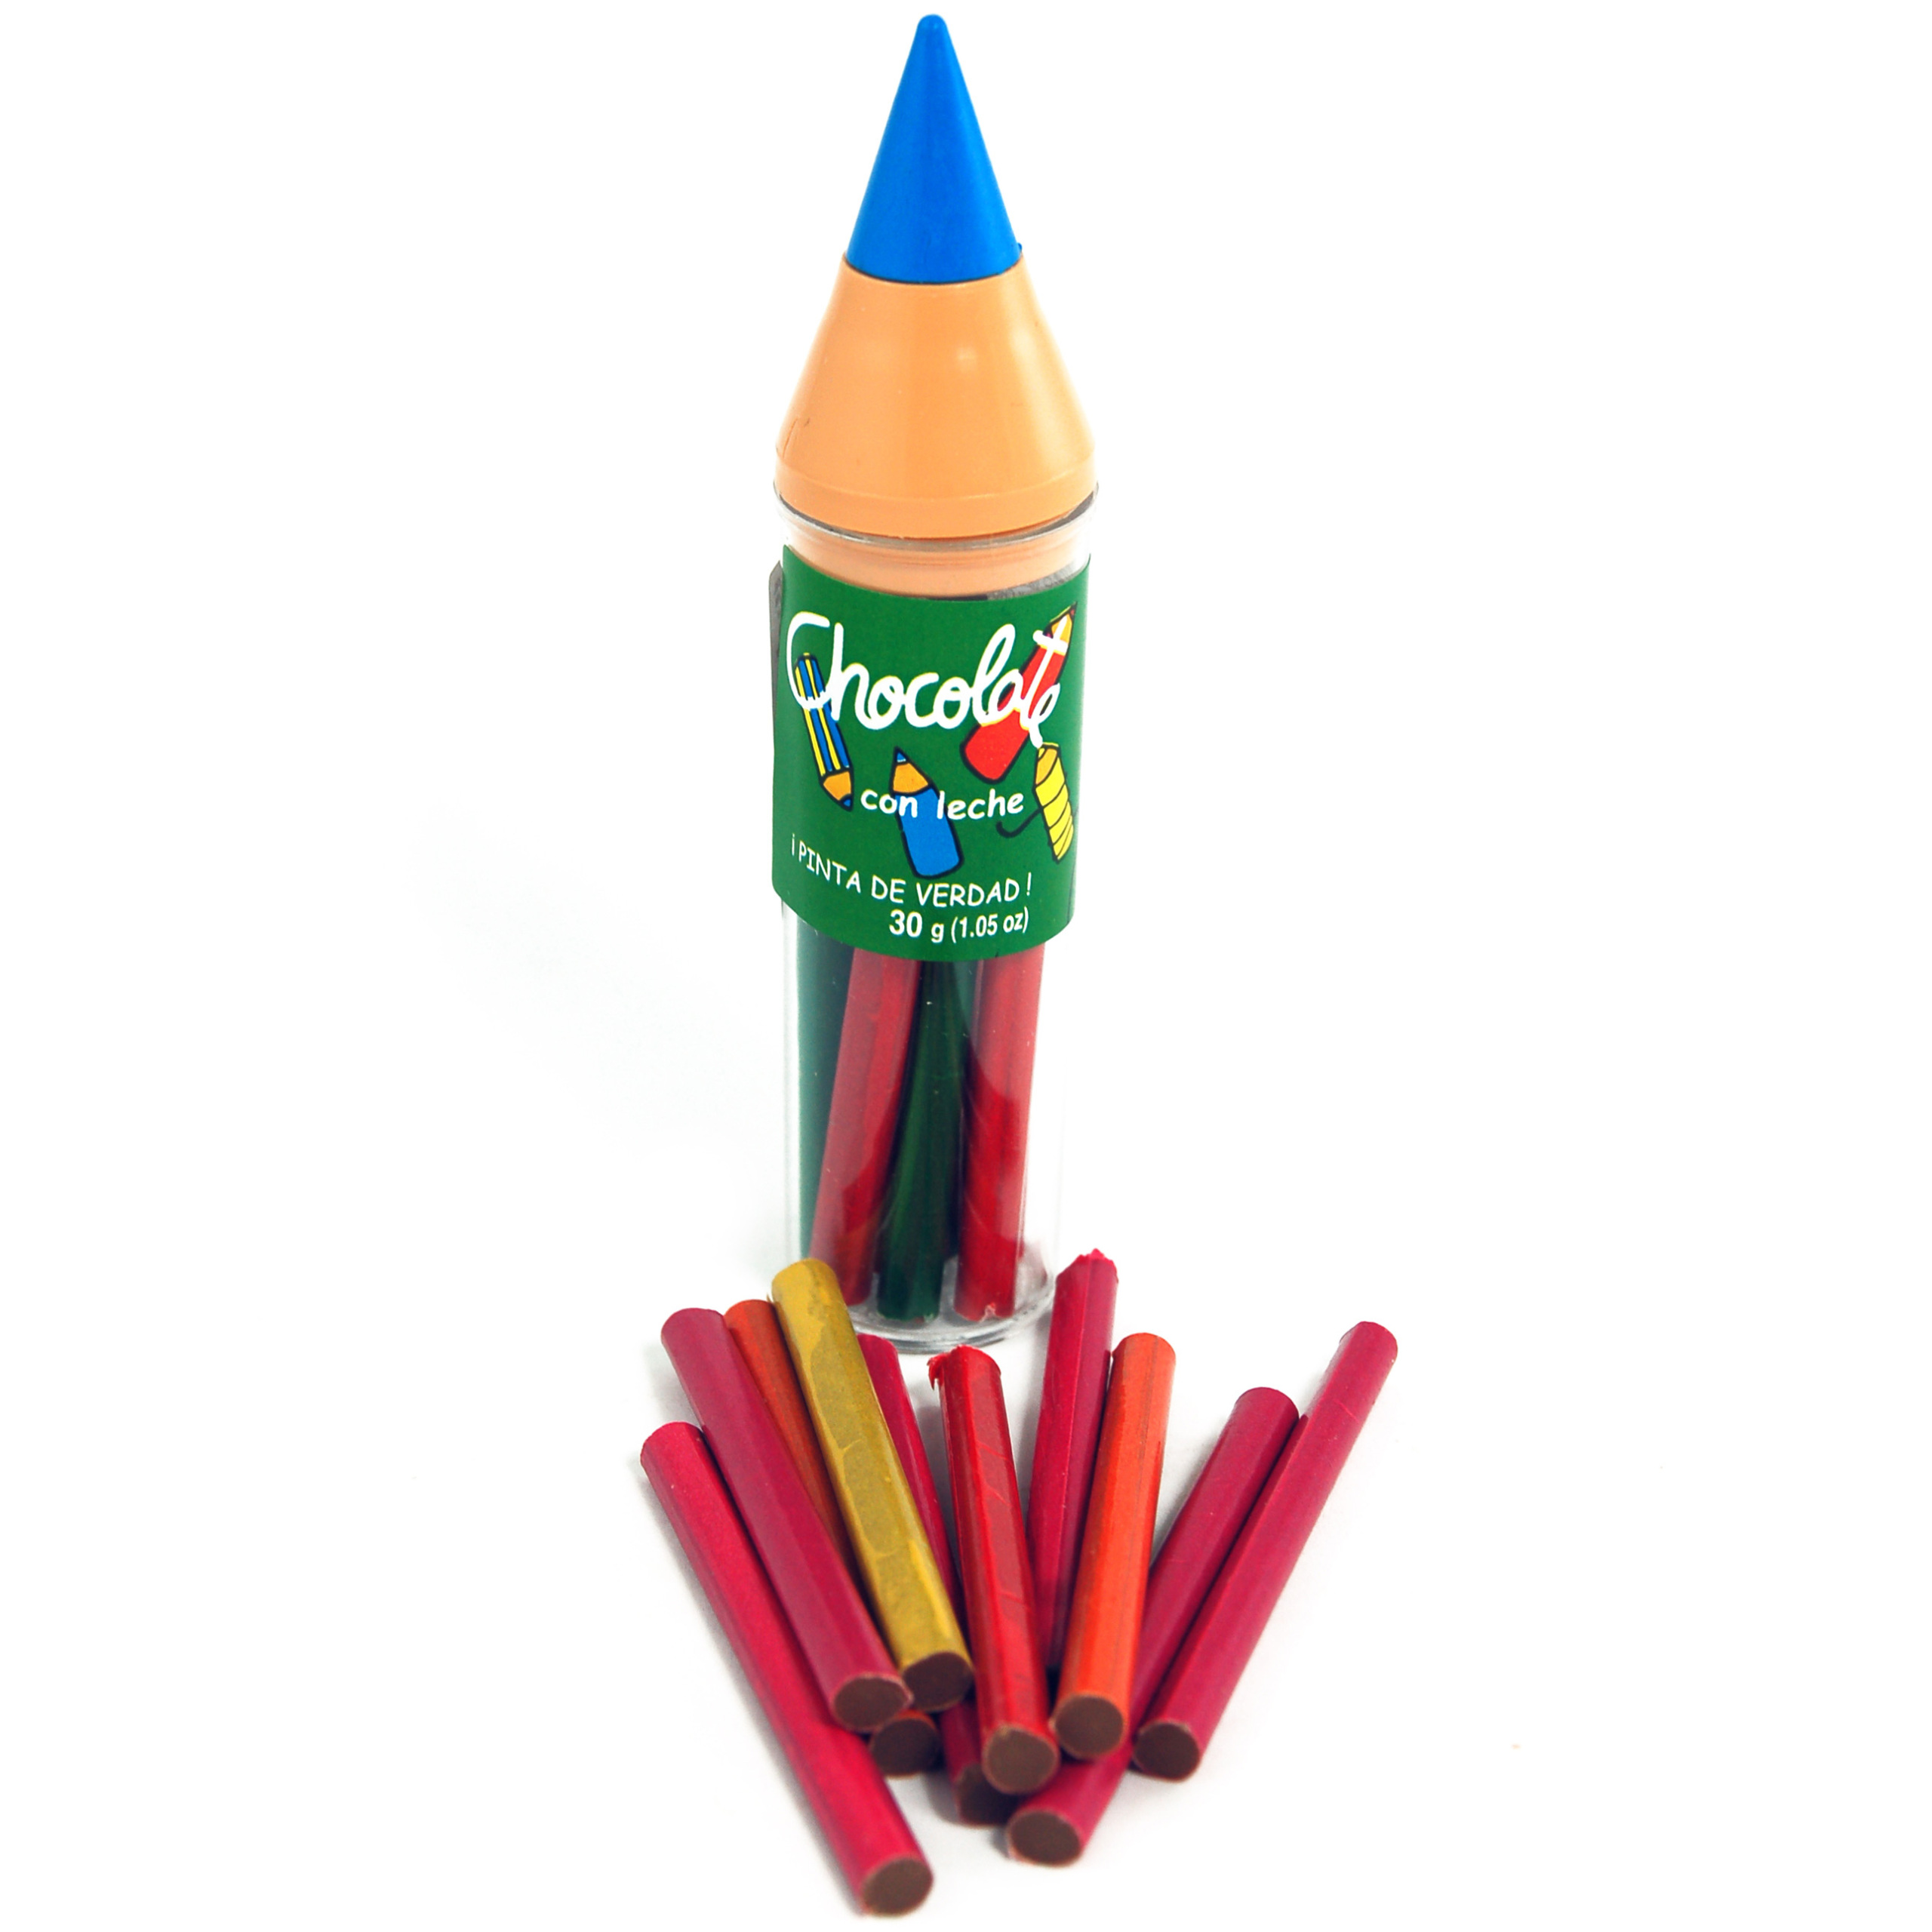 Graduation métrique uniquement inclus un crayon de menuisier Simon & Co Équerre combinée en acier inoxydable 300mm 